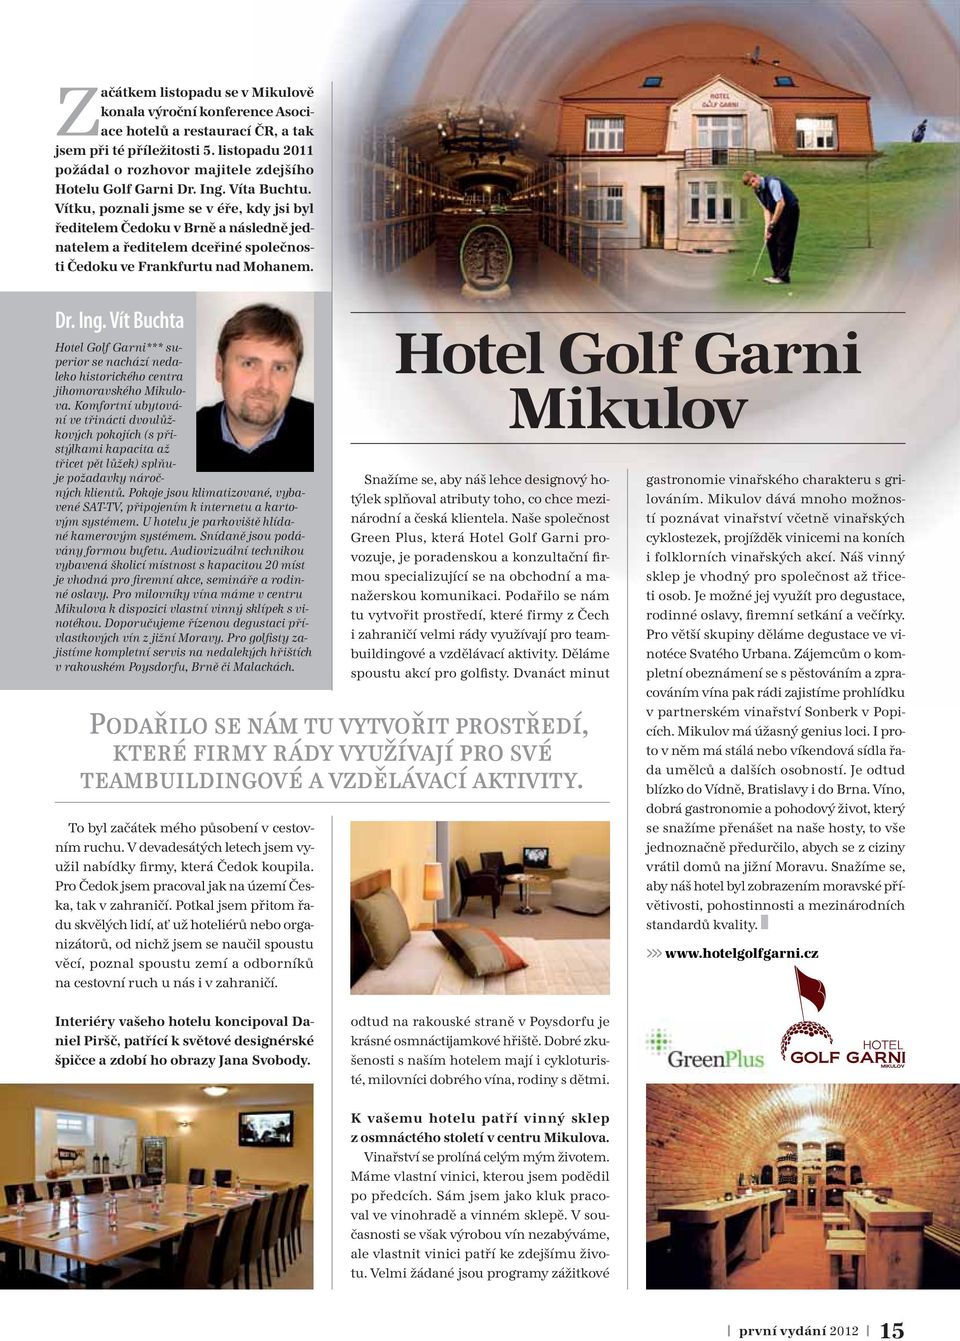 Vít Buchta Hotel Golf Garni*** superior se nachází nedaleko historického centra jihomoravského Mikulova.